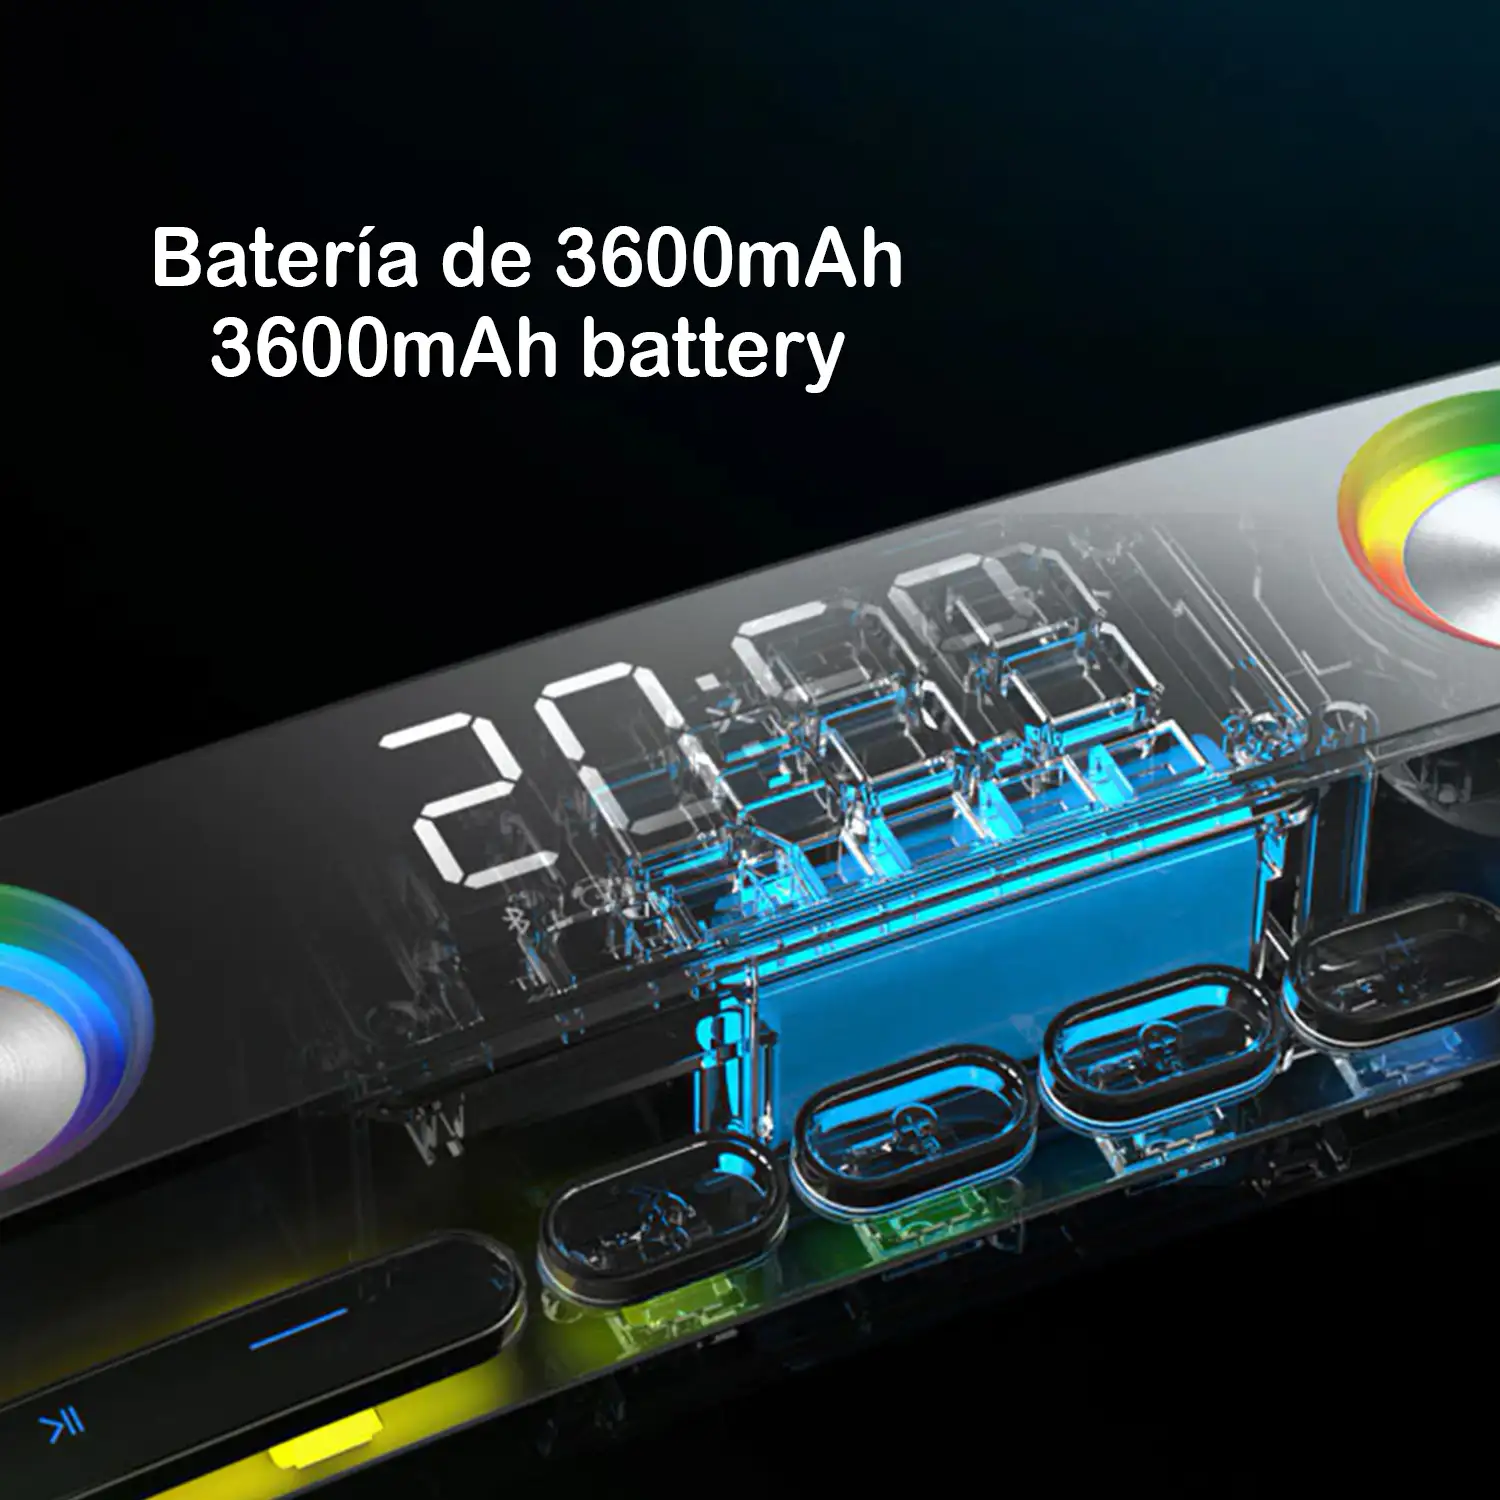 Barra de sonido SH39 Bluetooth 5.0 con teclas mecánicas, pantalla y luz RGB. Batería de 3600mAh. Gaming, home cinema.